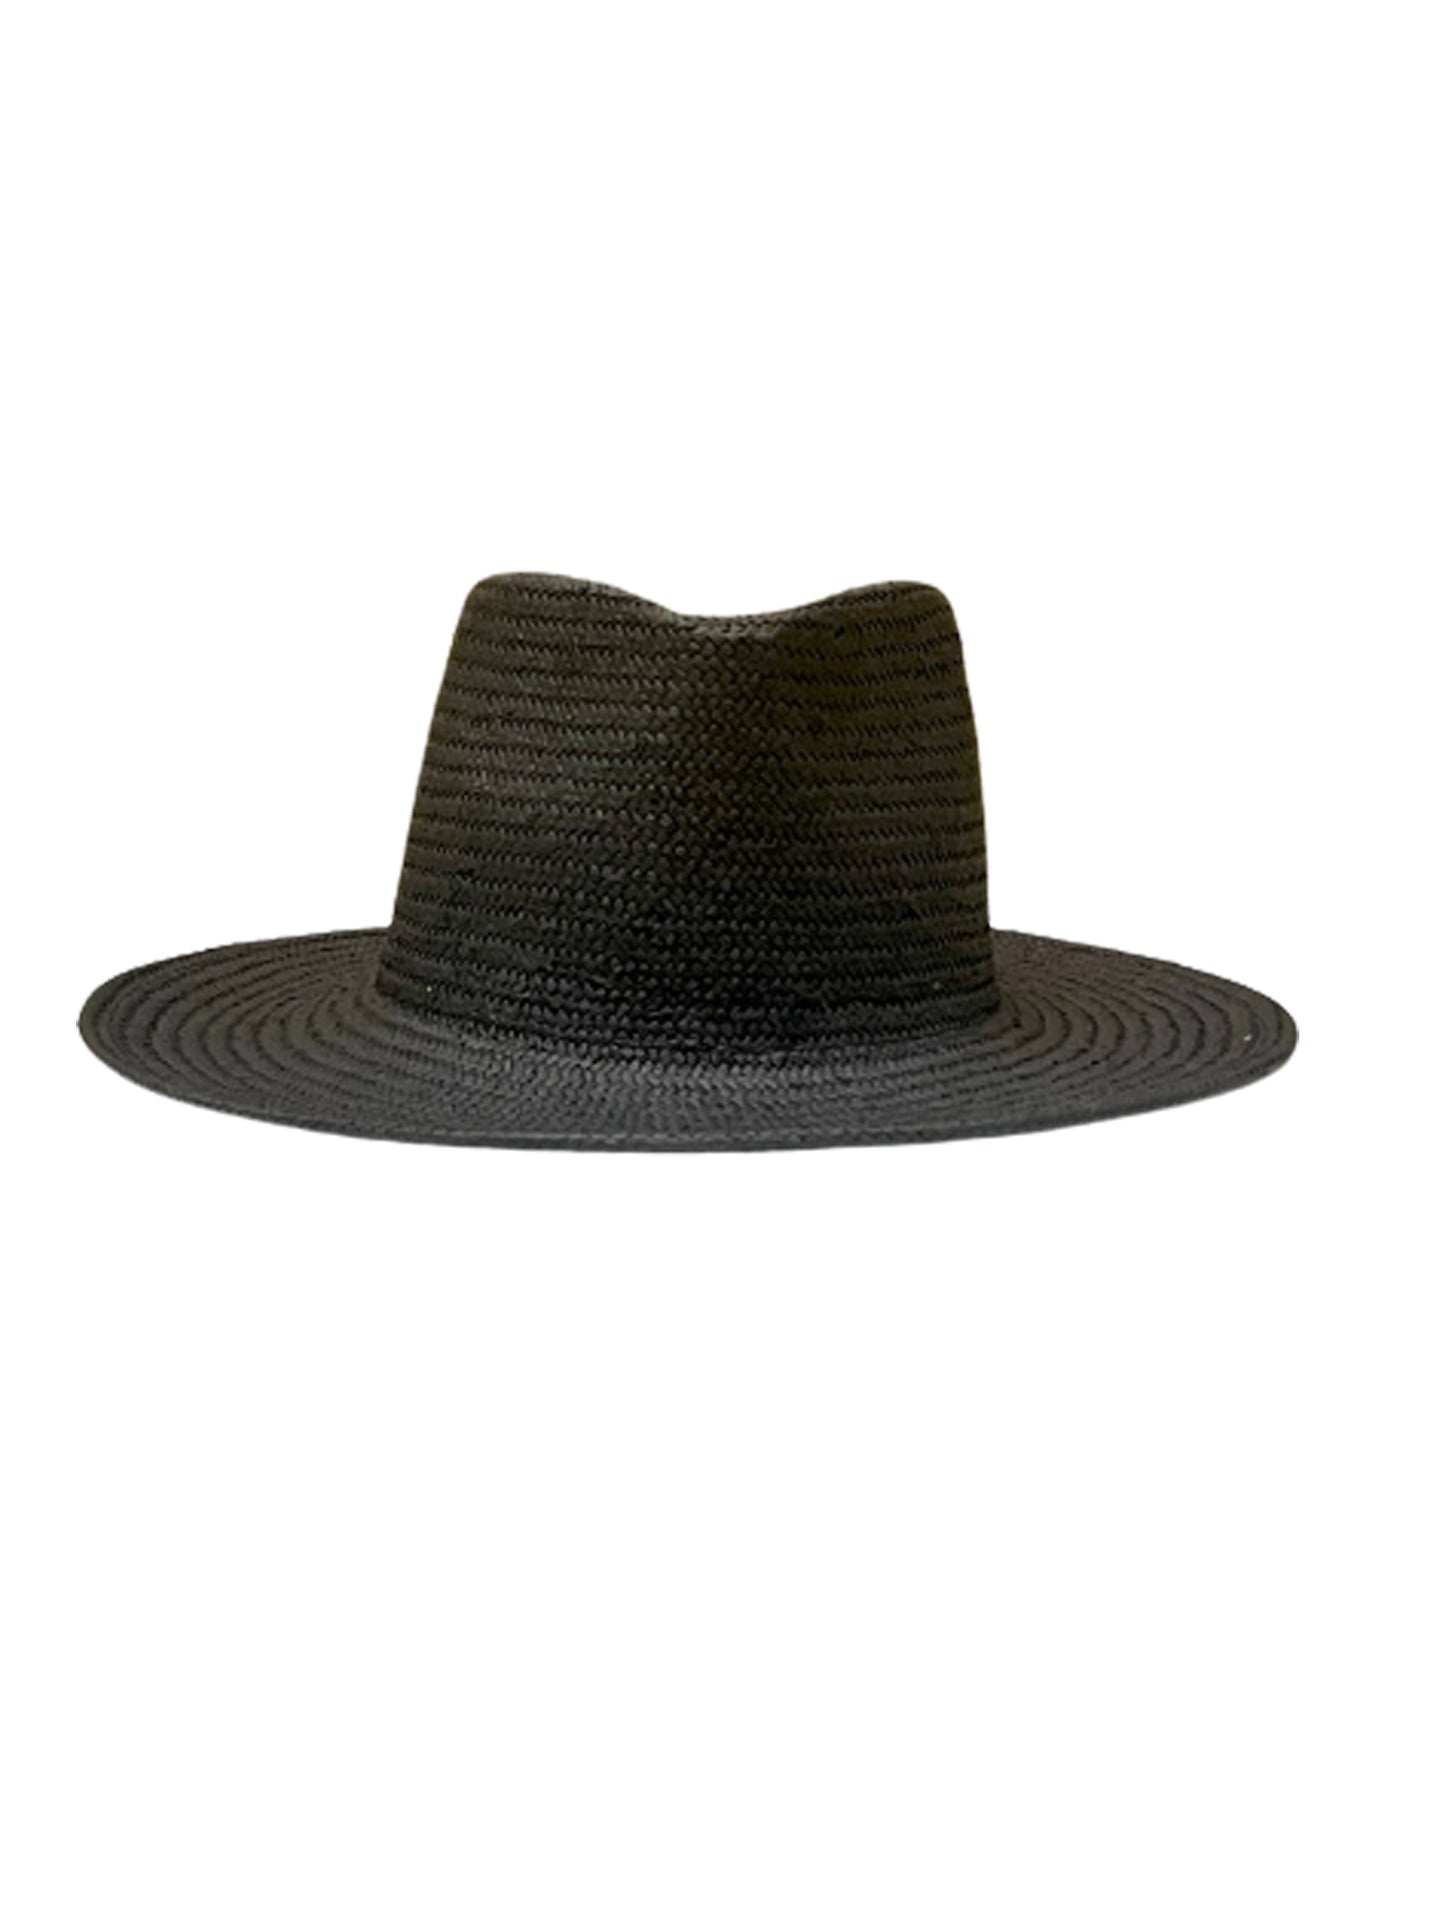 coronado hat black front